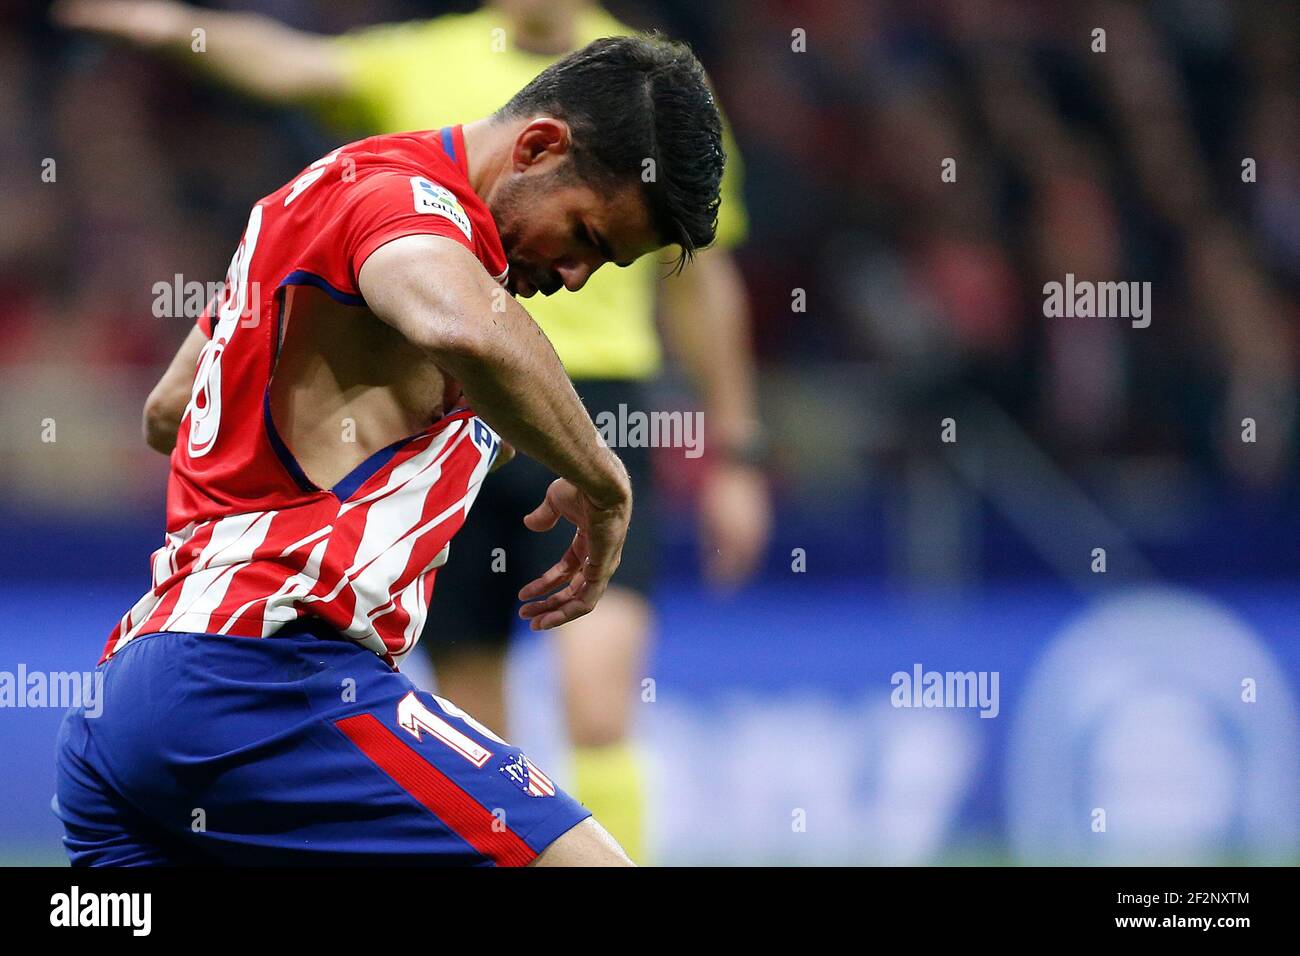 Diego Costa, delantero español del Atlético de Madrid, reacciona después de que su camiseta fuera desgarrada la Copa del Rey, ronda de 2nd, partidos de fútbol entre el Real Madrid